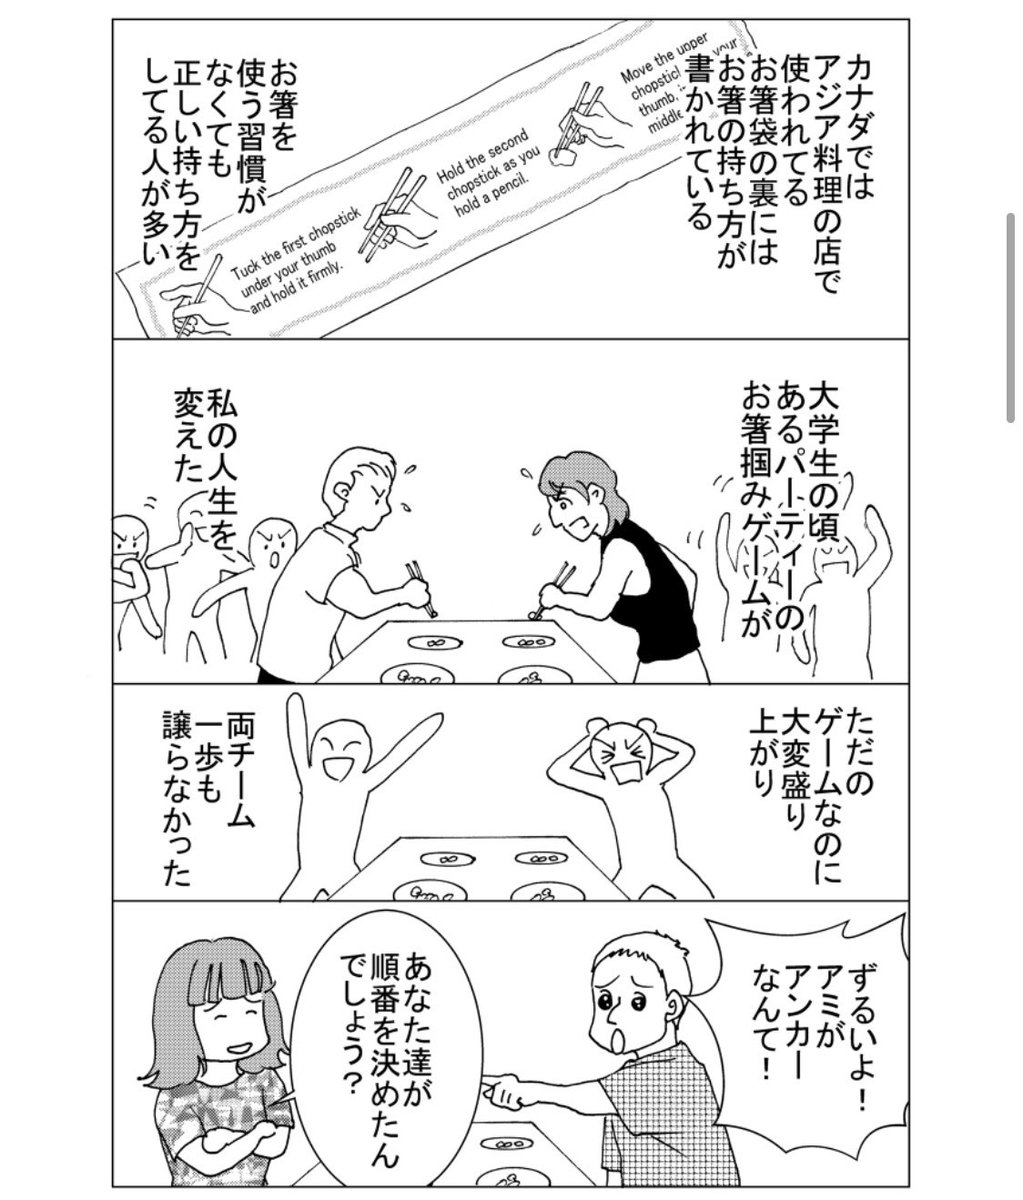 最新話「ハマダは天然色」12をアップしました!今回日本、香港とカナダとお箸事情!ハマダのお箸の持ち方にも注目!https://t.co/4z7LxRxlPi
#エッセイ漫画 
#オリジナル漫画 
#国際結婚 
#漫画が読めるハッシュタグ 